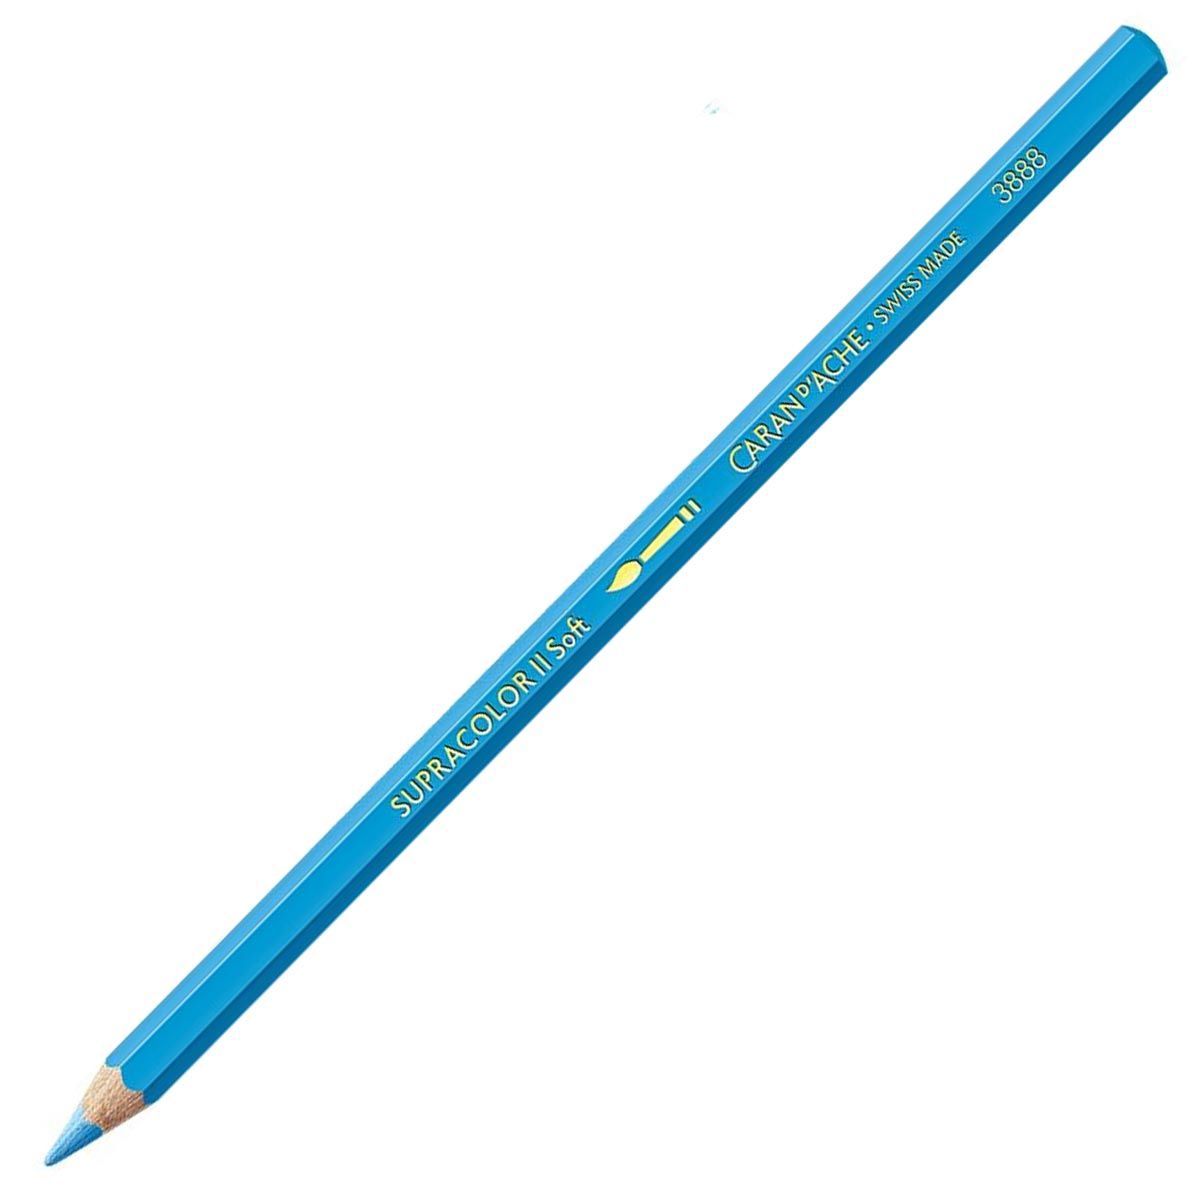 Caran d'Ache Supracolor ll Soft Aquarelle Pencil - Light Blue 161